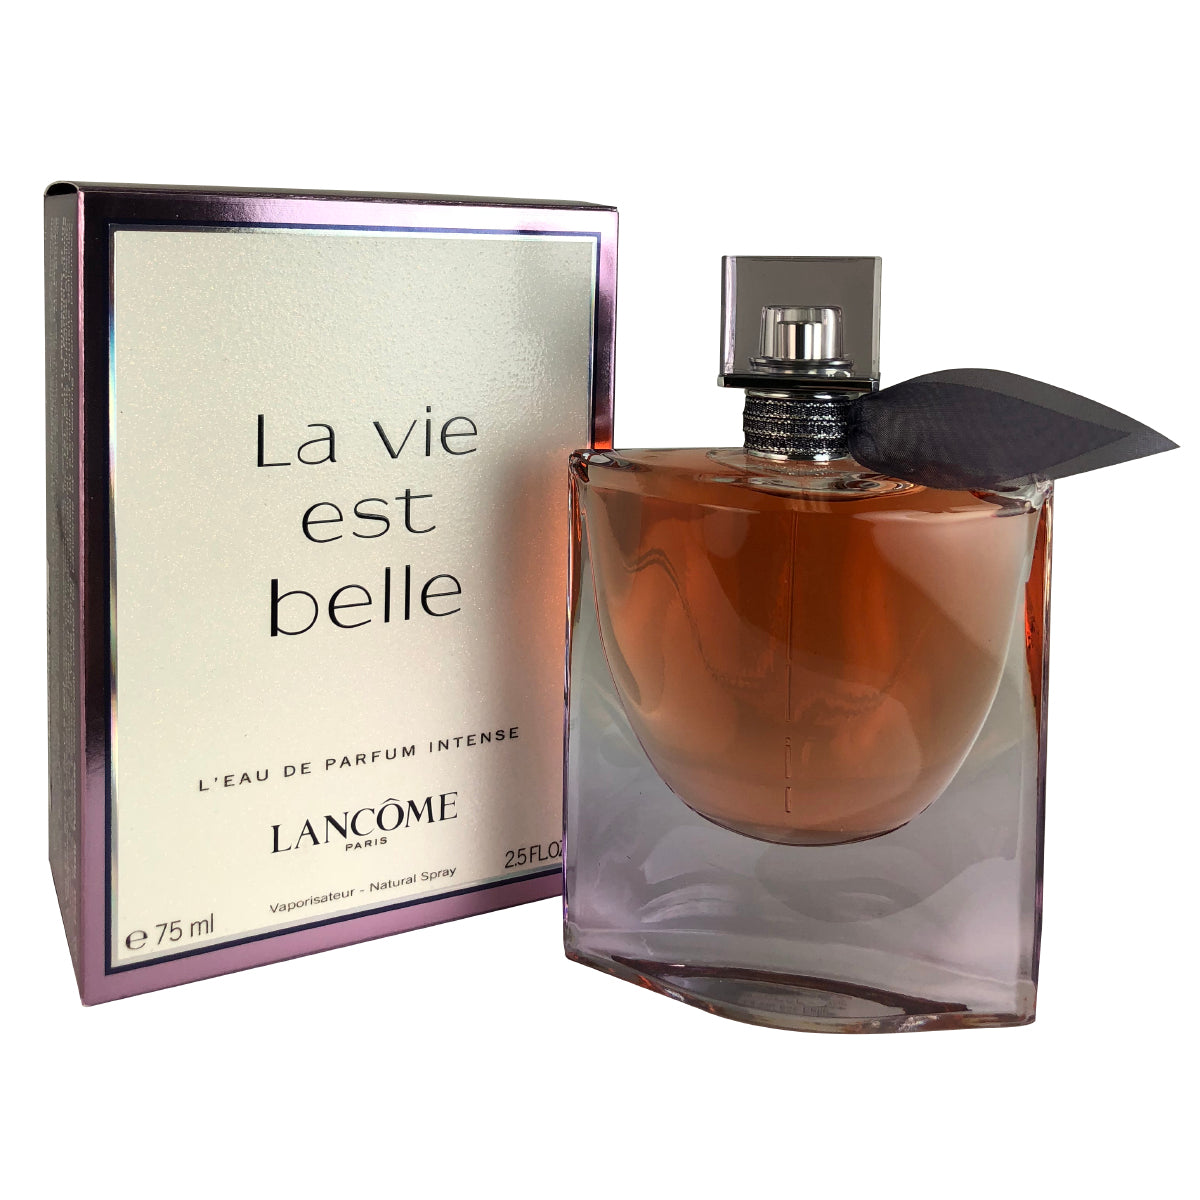 La Vie Est Belle by Lancome 2.5 oz L'Eau De Parfum Intense Spray